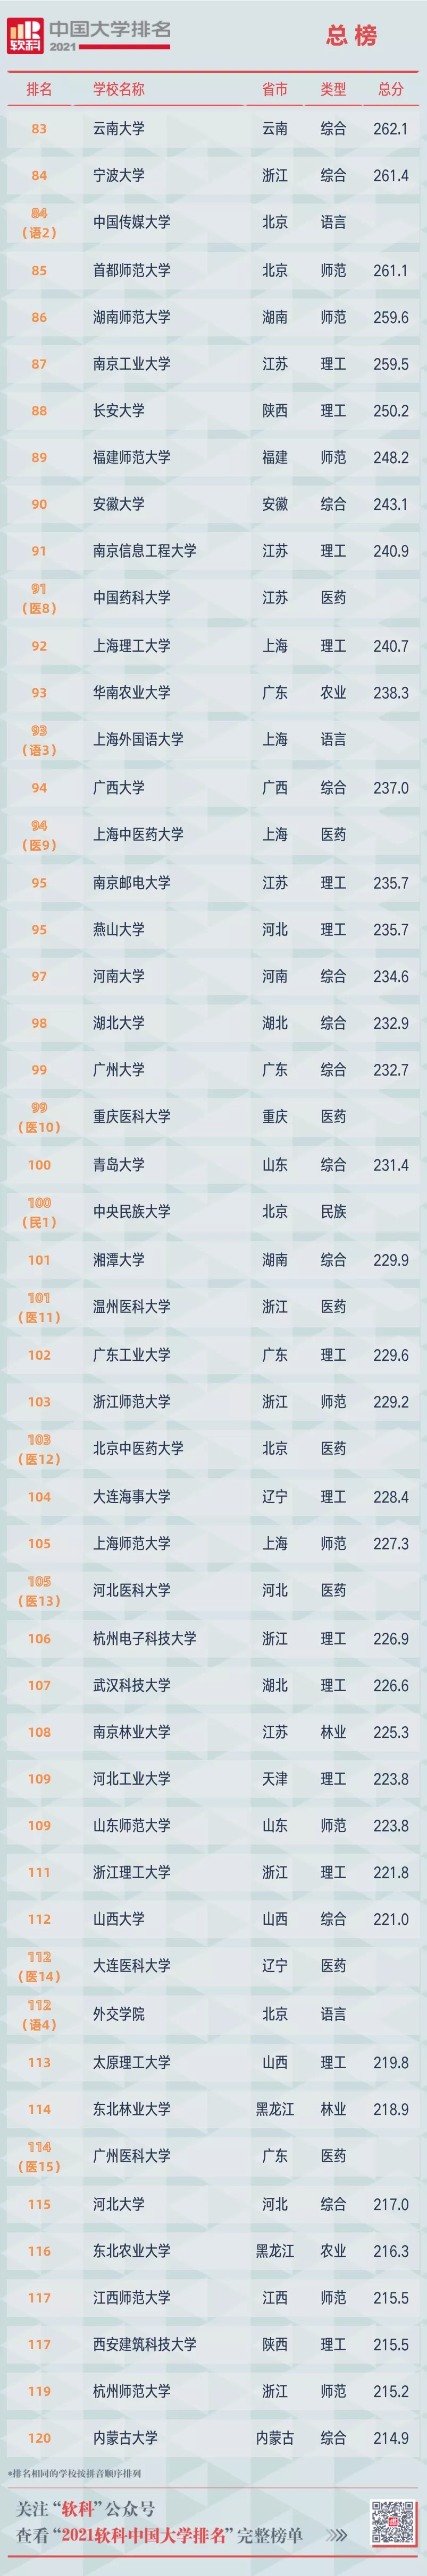 2021中国大学排名发布!云南一所高校跻身百强,你的母校排第几?